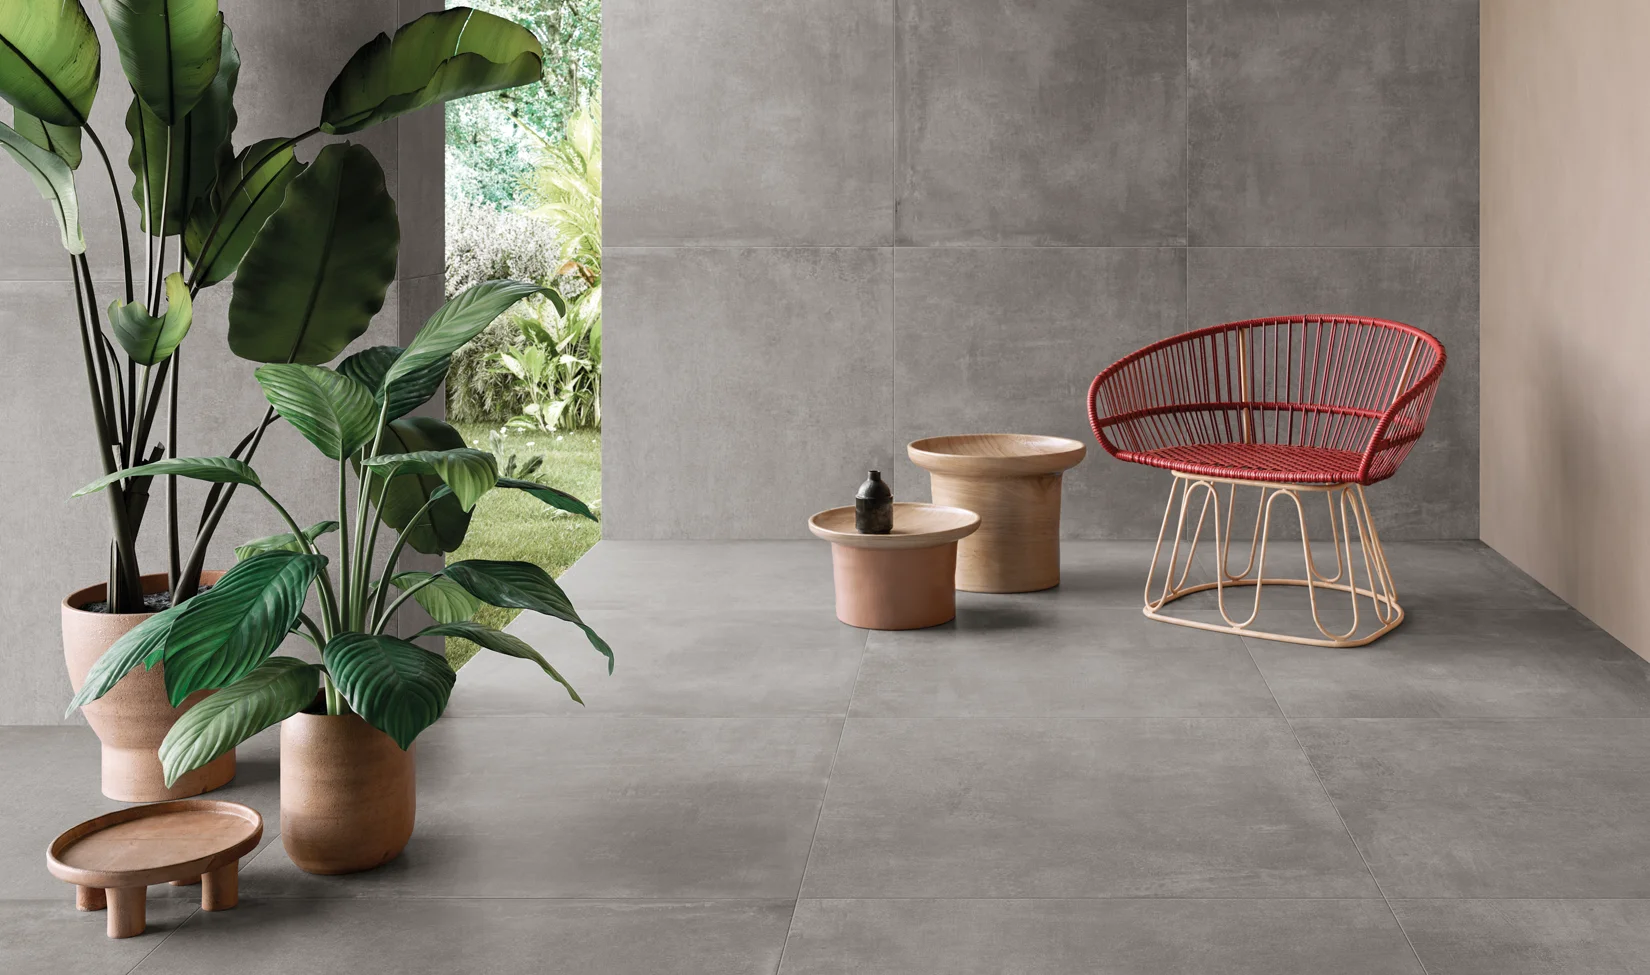 Interni moderni con pavimento in gres porcellanato grigio chiaro della collezione Noord tonalità Grey, arredati con una sedia in filo rosso e tavolini in terracotta, e piante verdi con sfondo di giardino esterno.